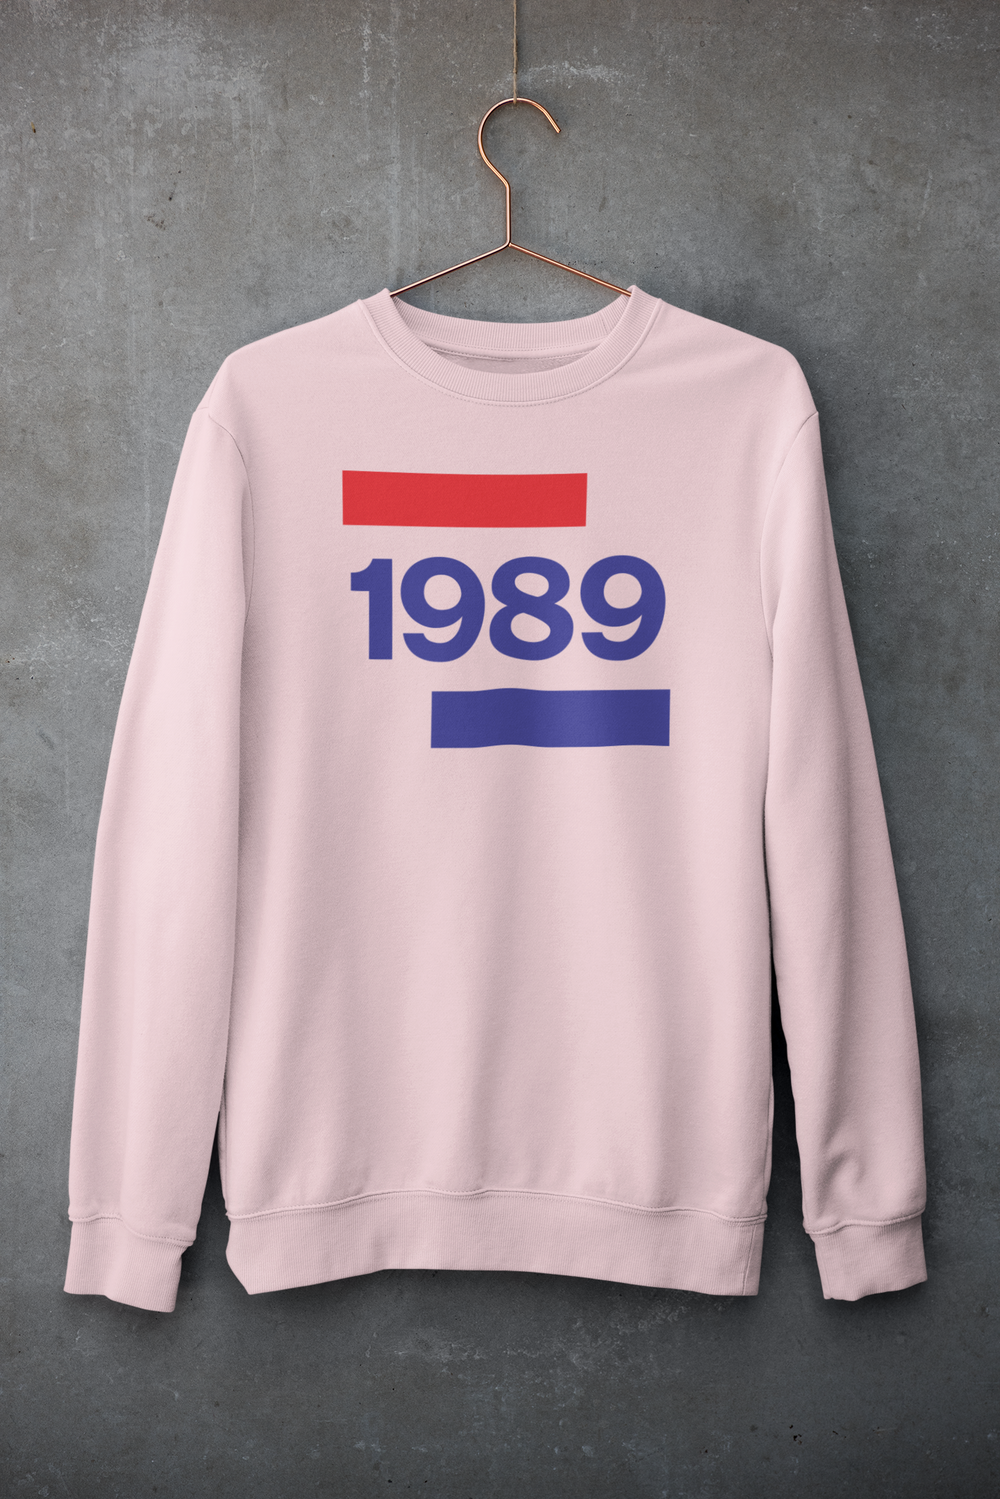 1989 'Going Dutch' UNISEX Sweater - TalkPeng